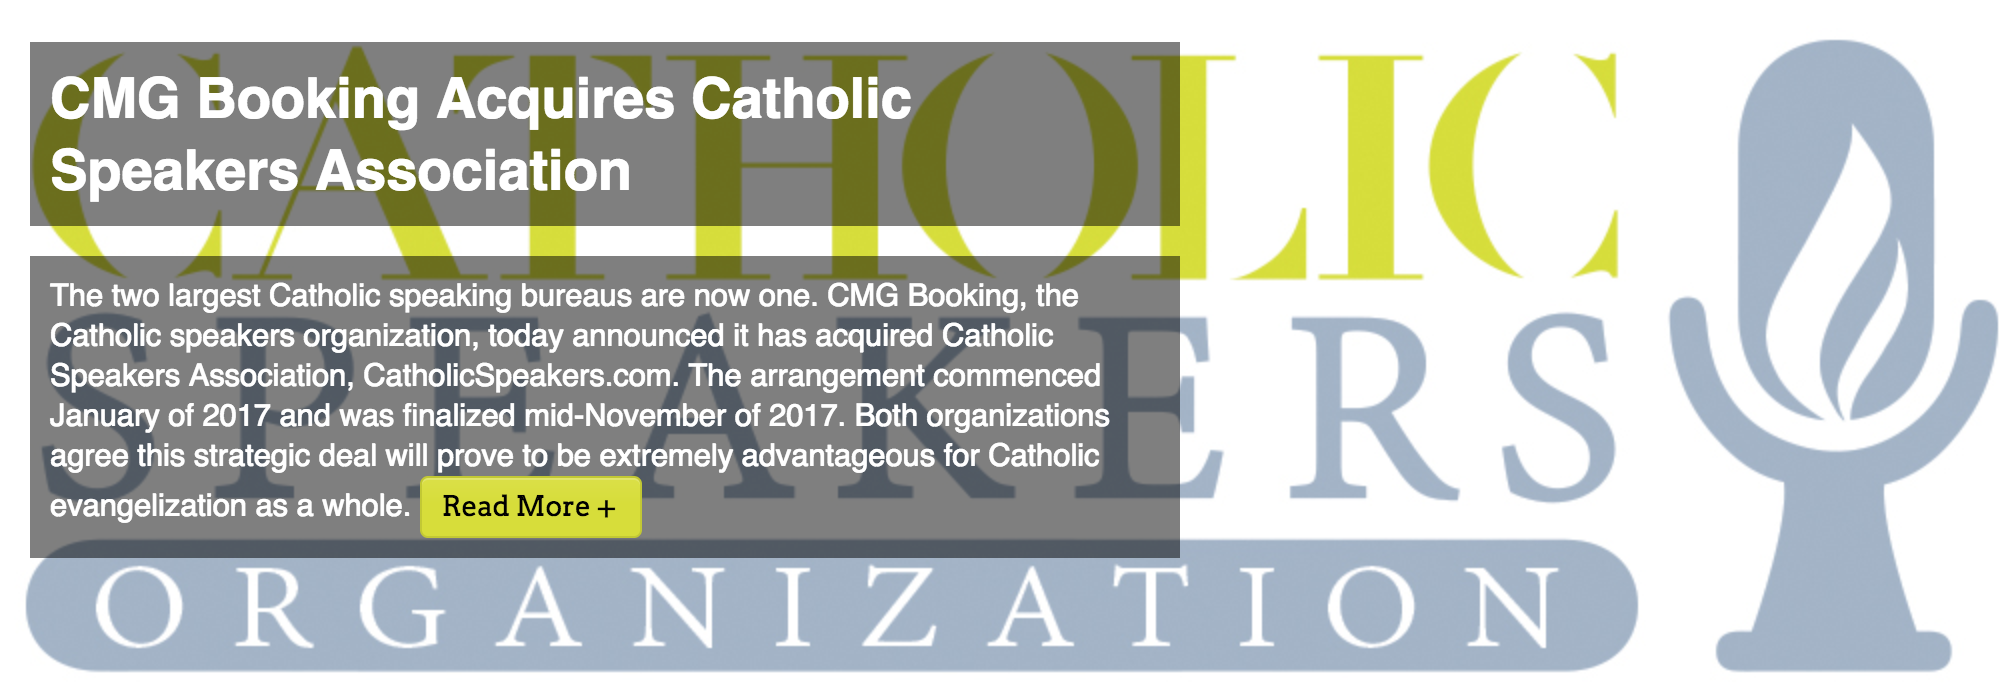 CMG Booking Acquires Catholic Speakers Association cs